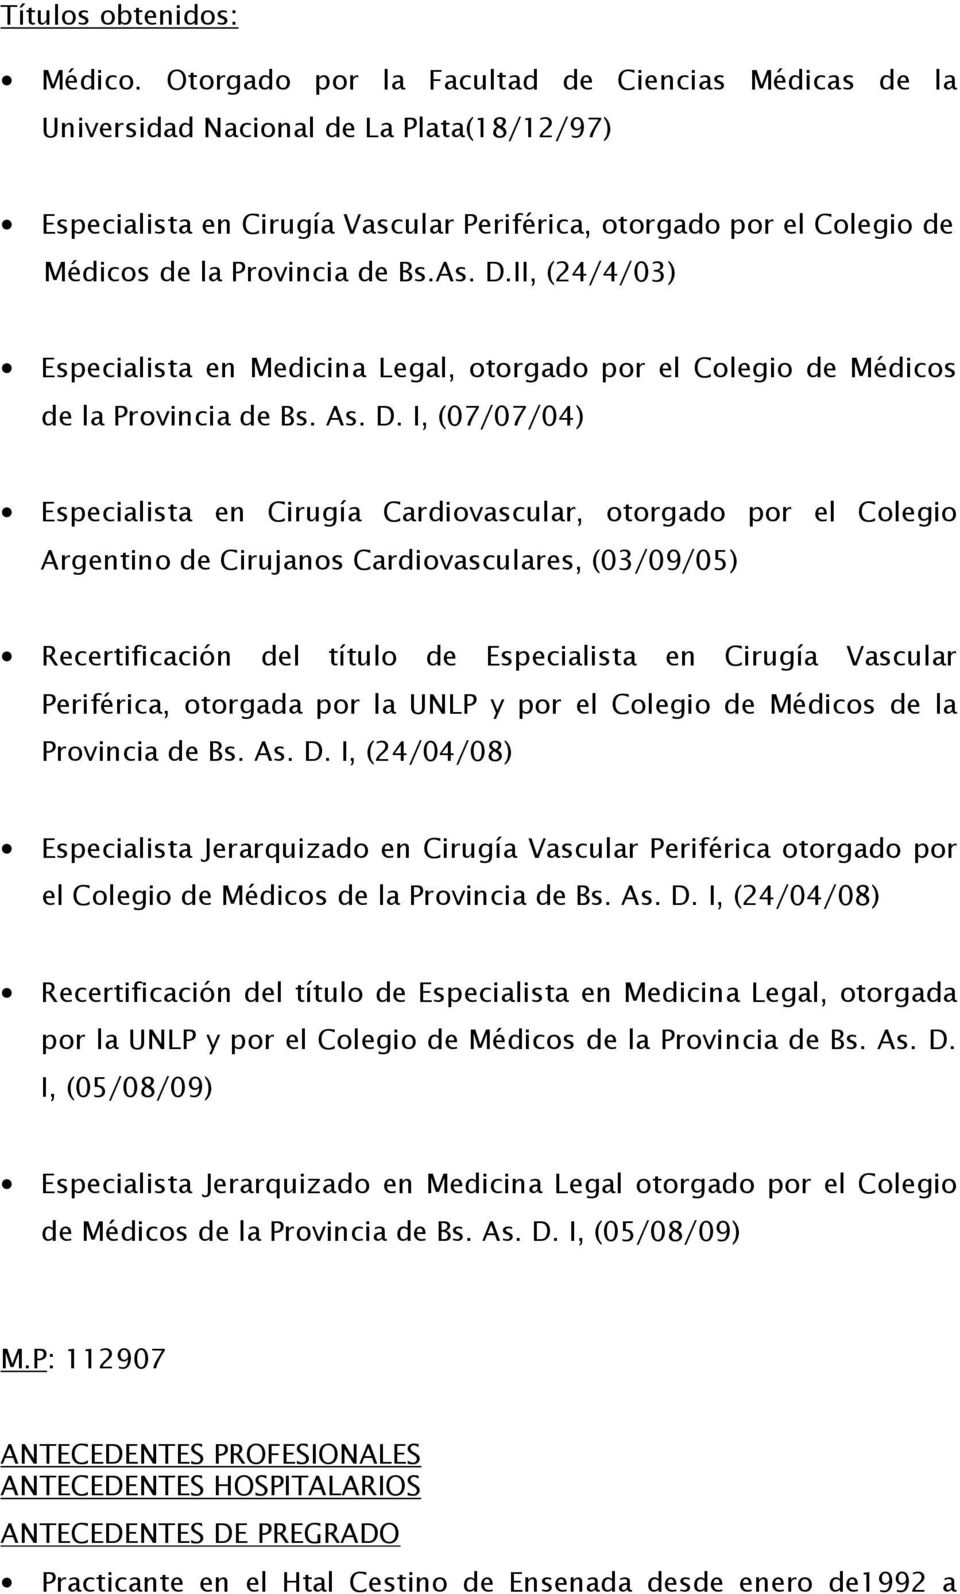 D.II, (24/4/03) Especialista en Medicina Legal, otorgado por el Colegio de Médicos de la Provincia de Bs. As. D.